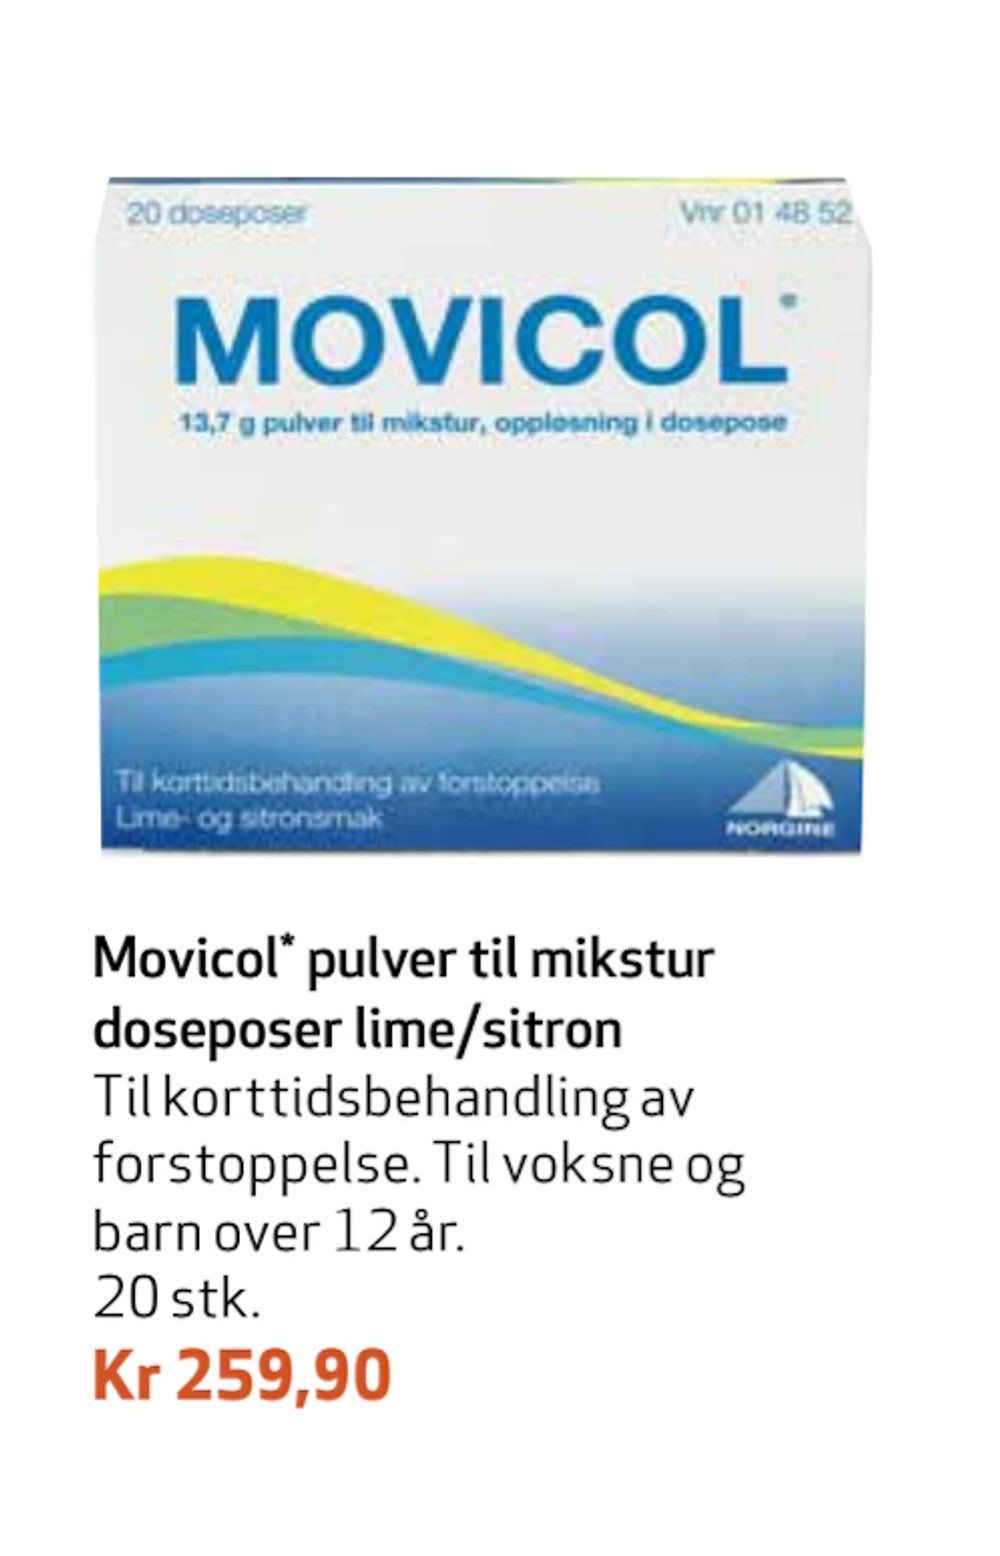 Tilbud på Movicol pulver til mikstur dose poser lime/sitron fra Apotek 1 til 259,90 kr